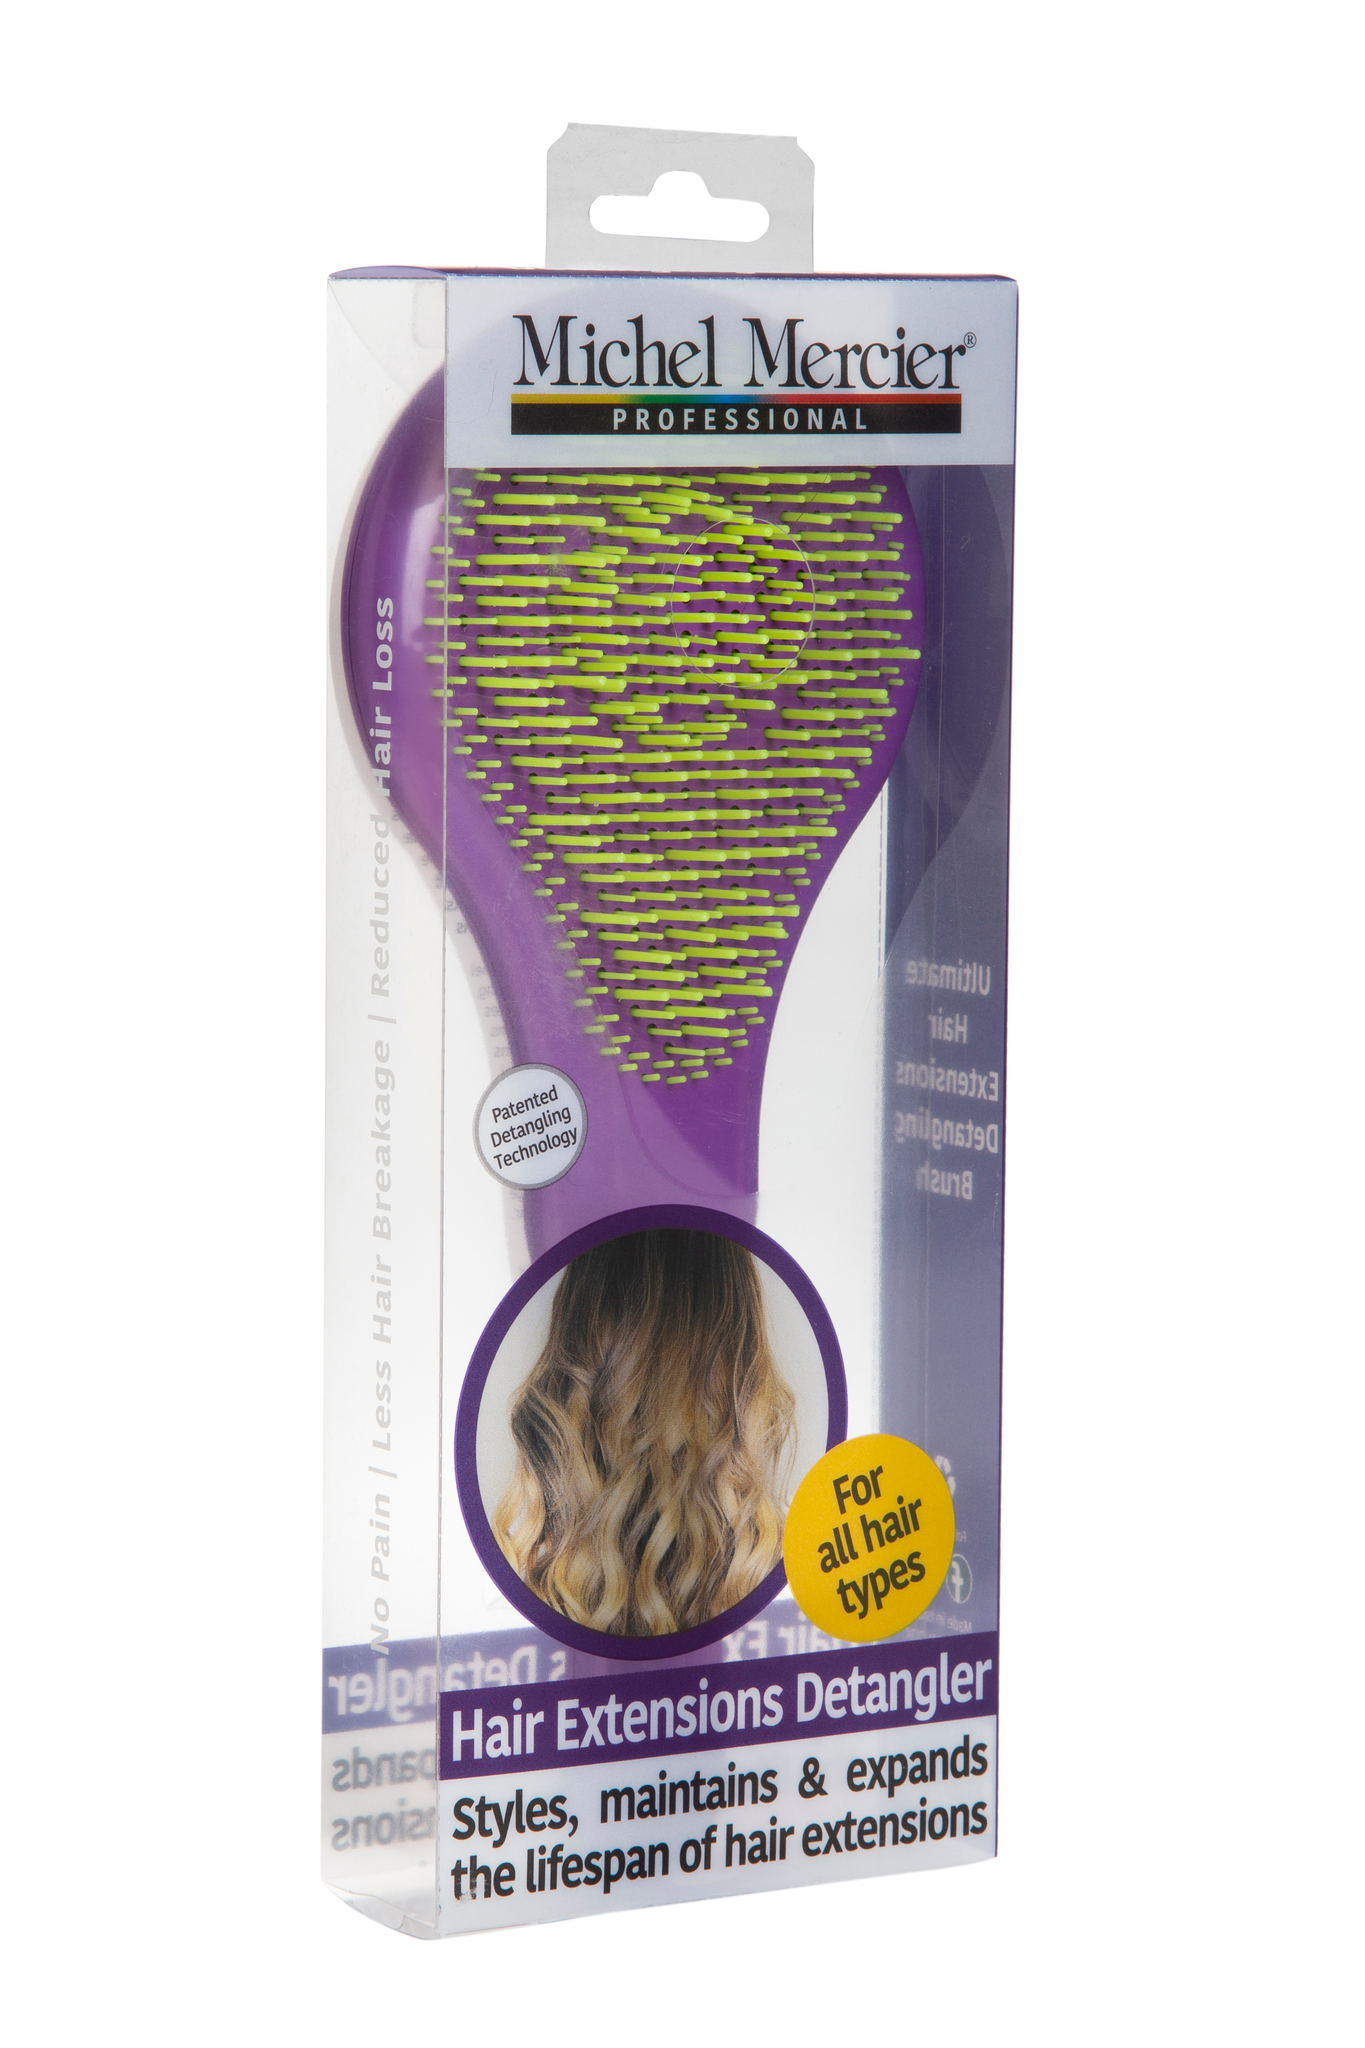 MICHAEL MERCIER Selvitysharja normaali hiuksille & hiustenpidennyksille